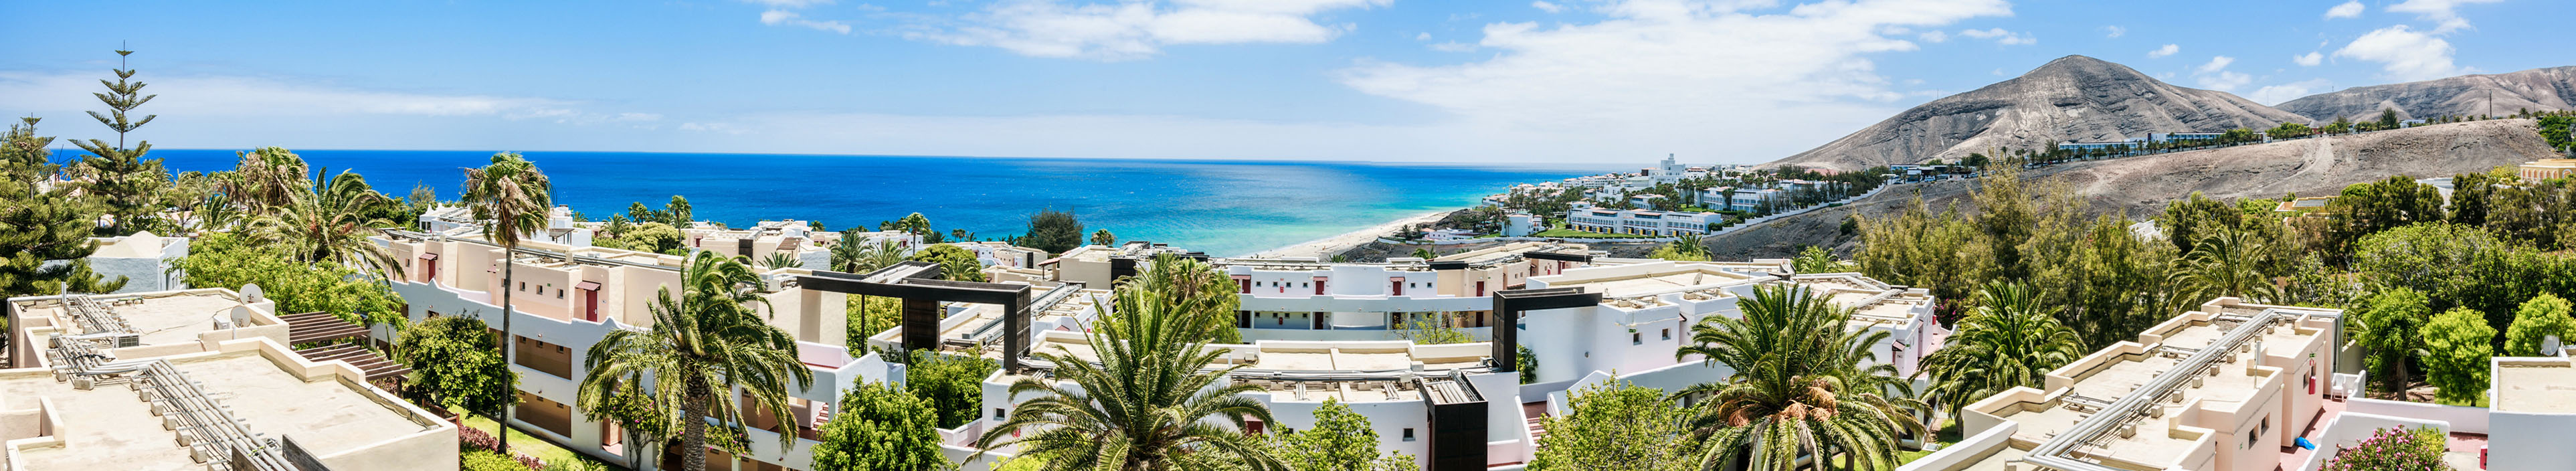 Hotels und Strand auf den Kanaren, Spanien.